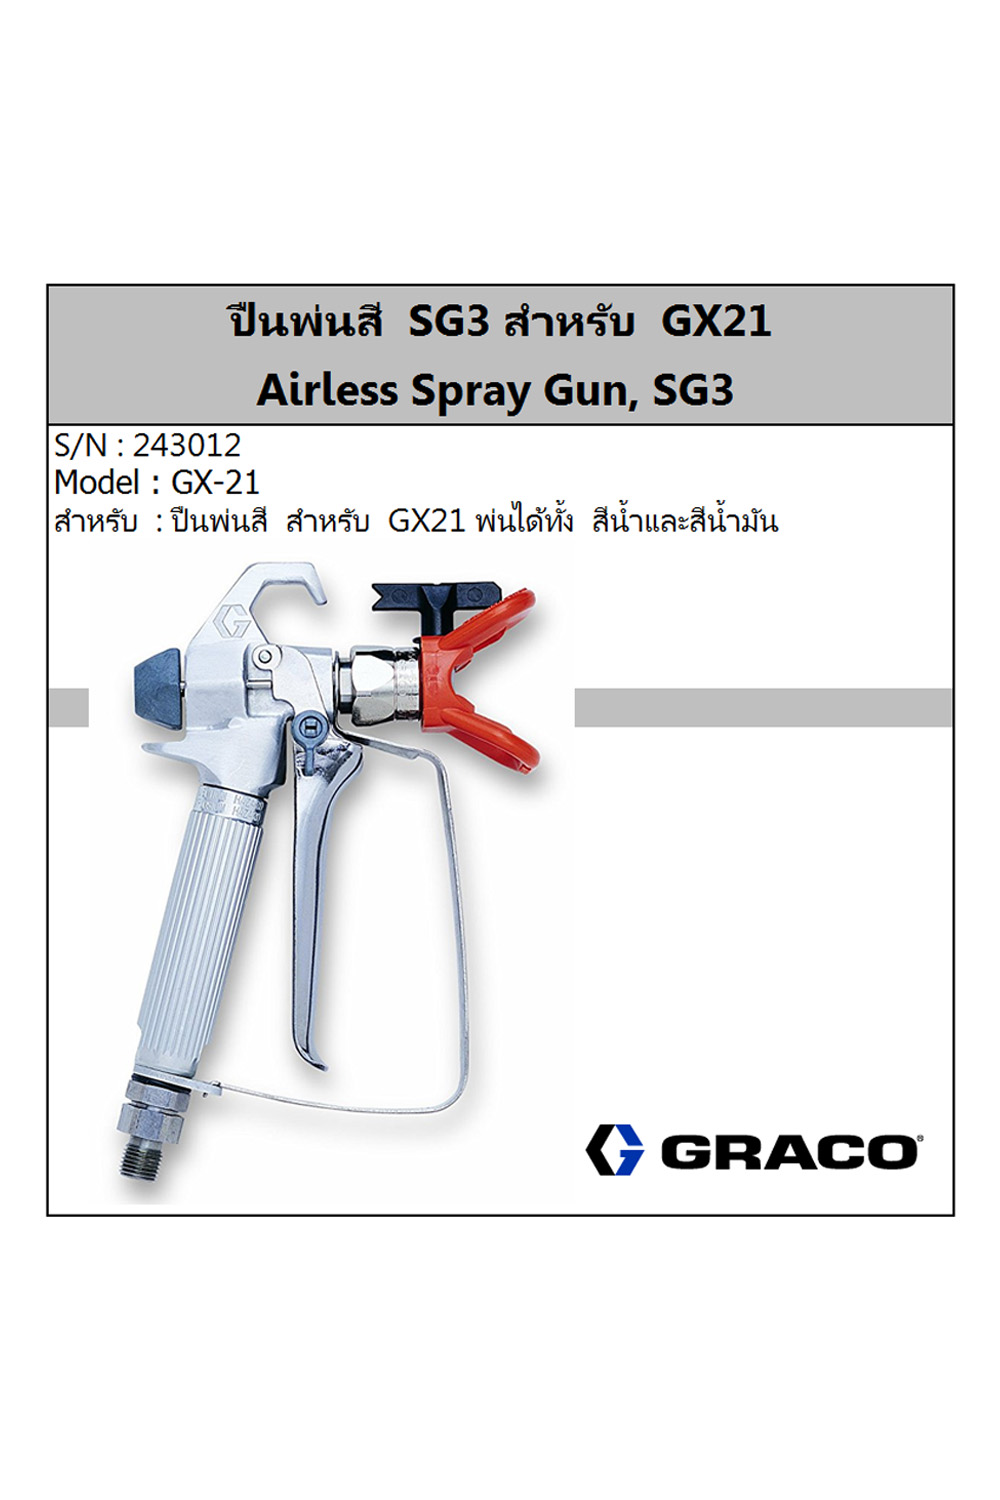 graco sg3 airless spray gun 243012